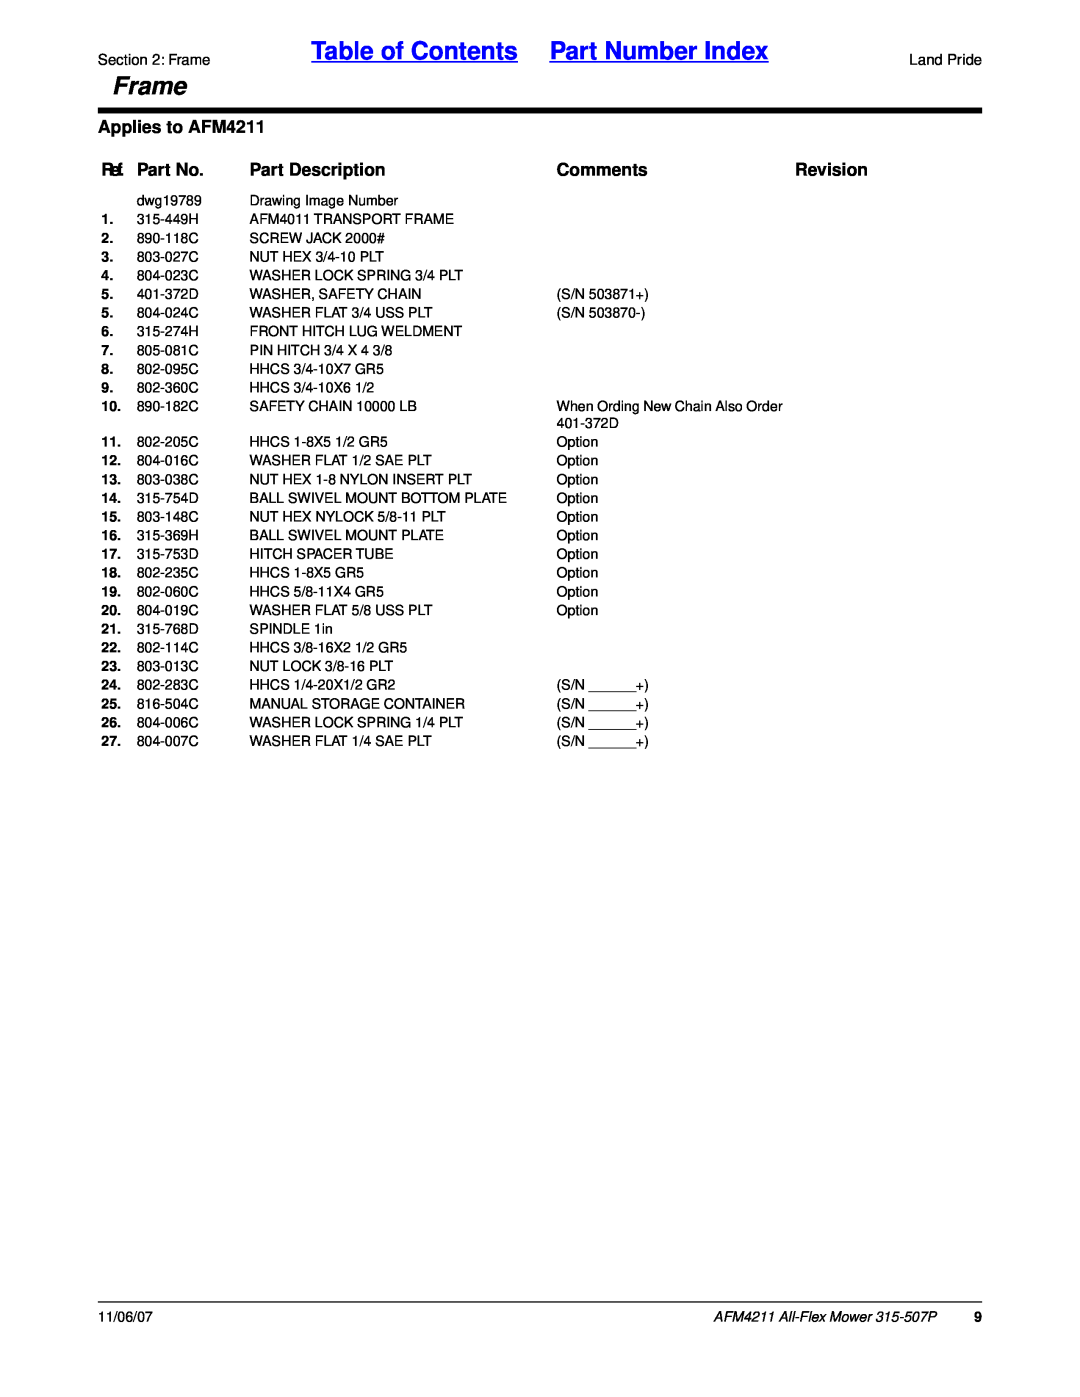 Land Pride All-Flex Mower Table of Contents Part Number Index, Frame, Applies to AFM4211, Ref. Part No, Part Description 